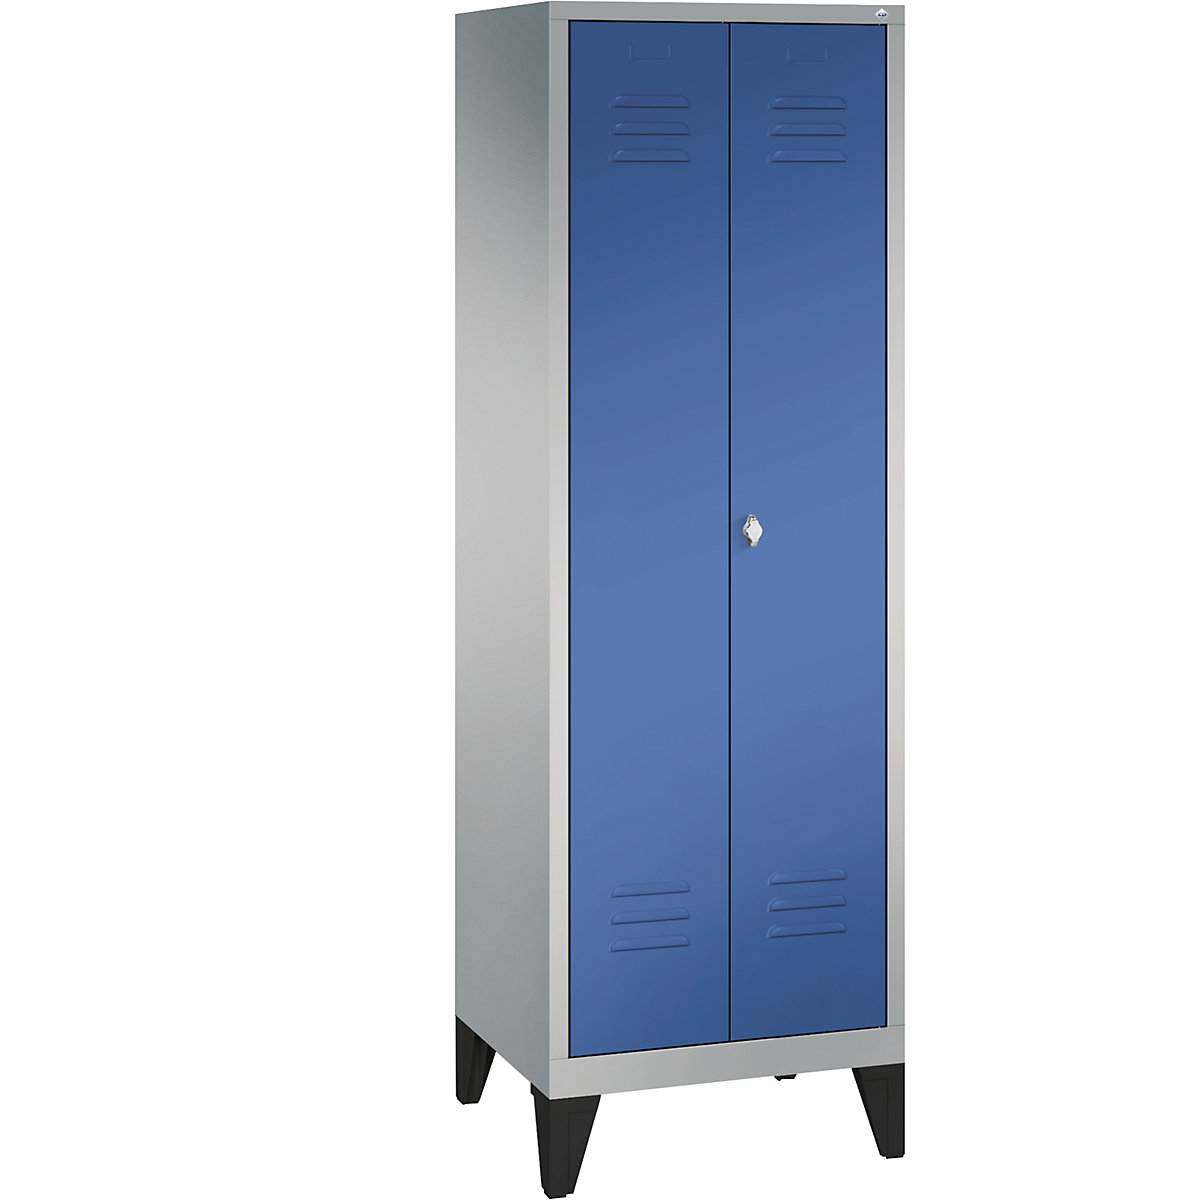 Garderobna omara CLASSIC z nogami in dvokrilnimi vrati na stik – C+P, 2 predelka, širina 300 mm/predelek, aluminijasto bele / encijan modre barve-14